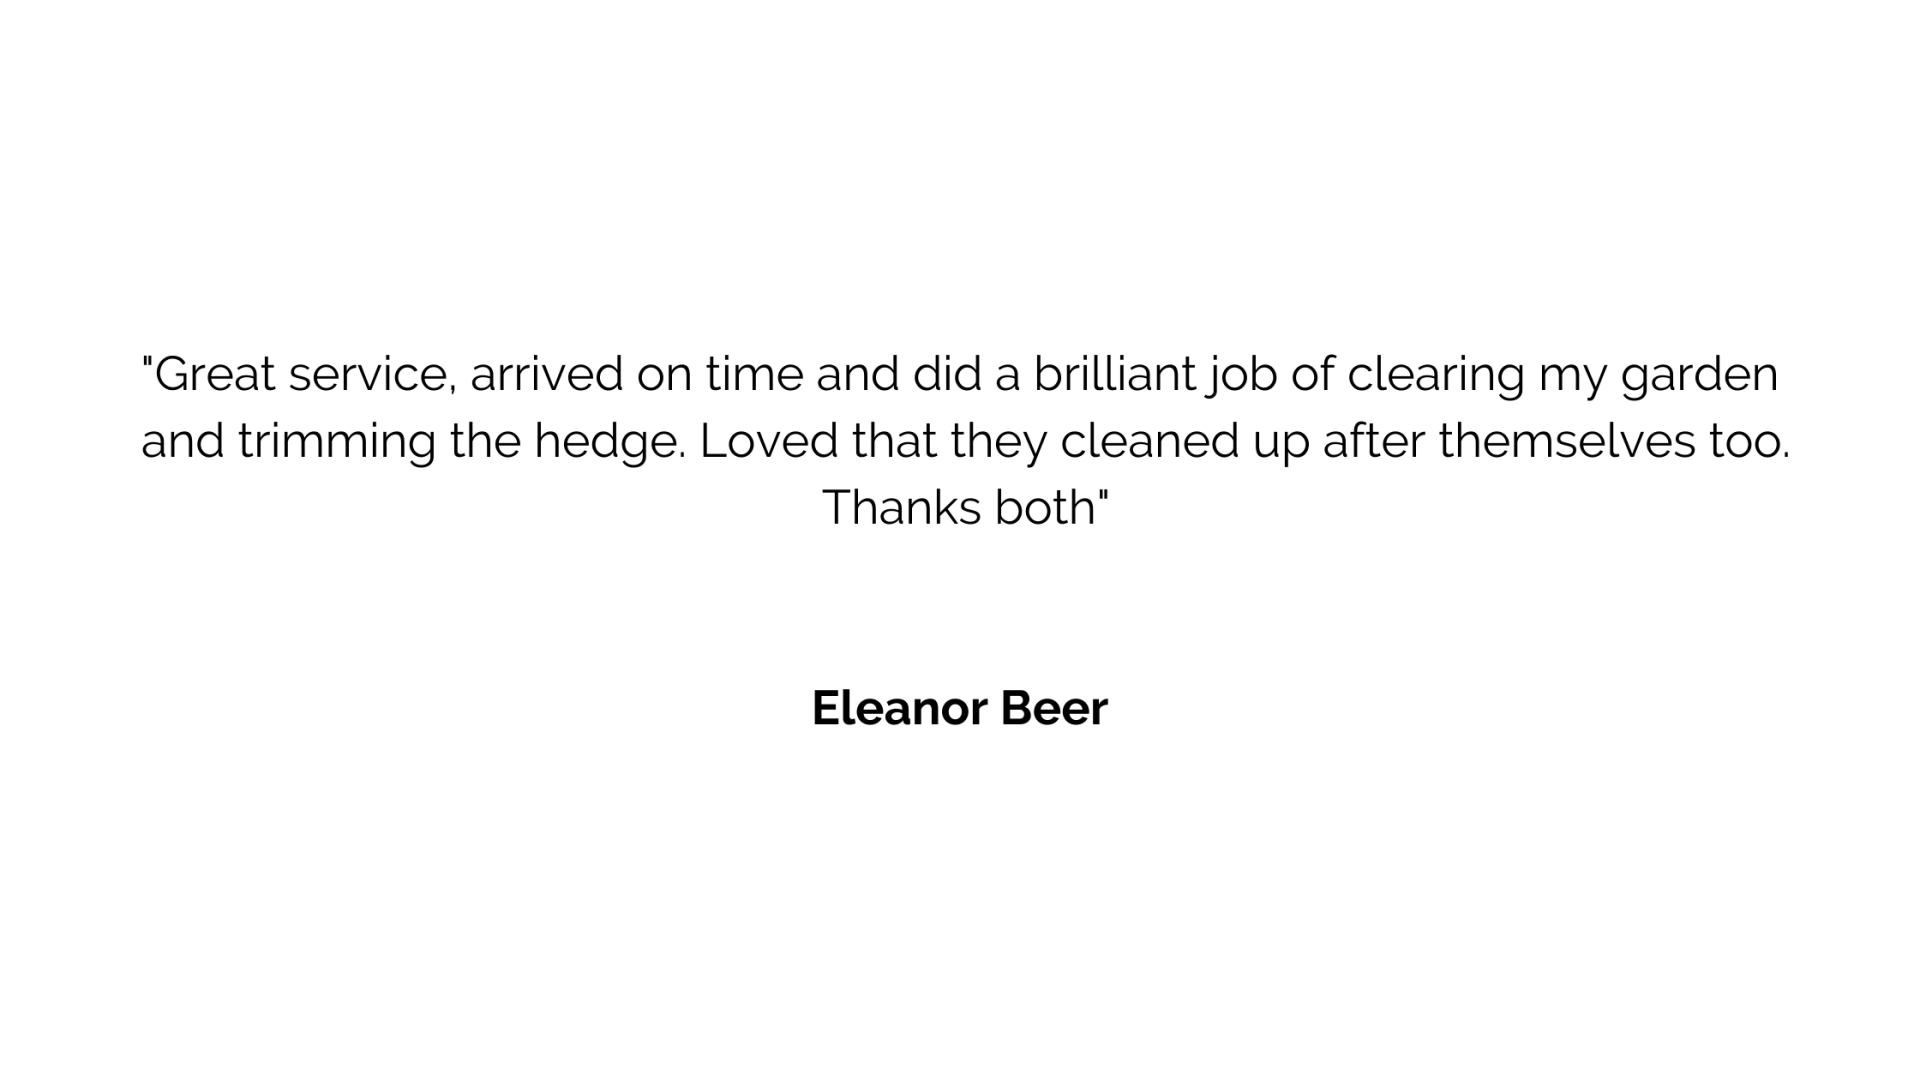 Eleanor Beer